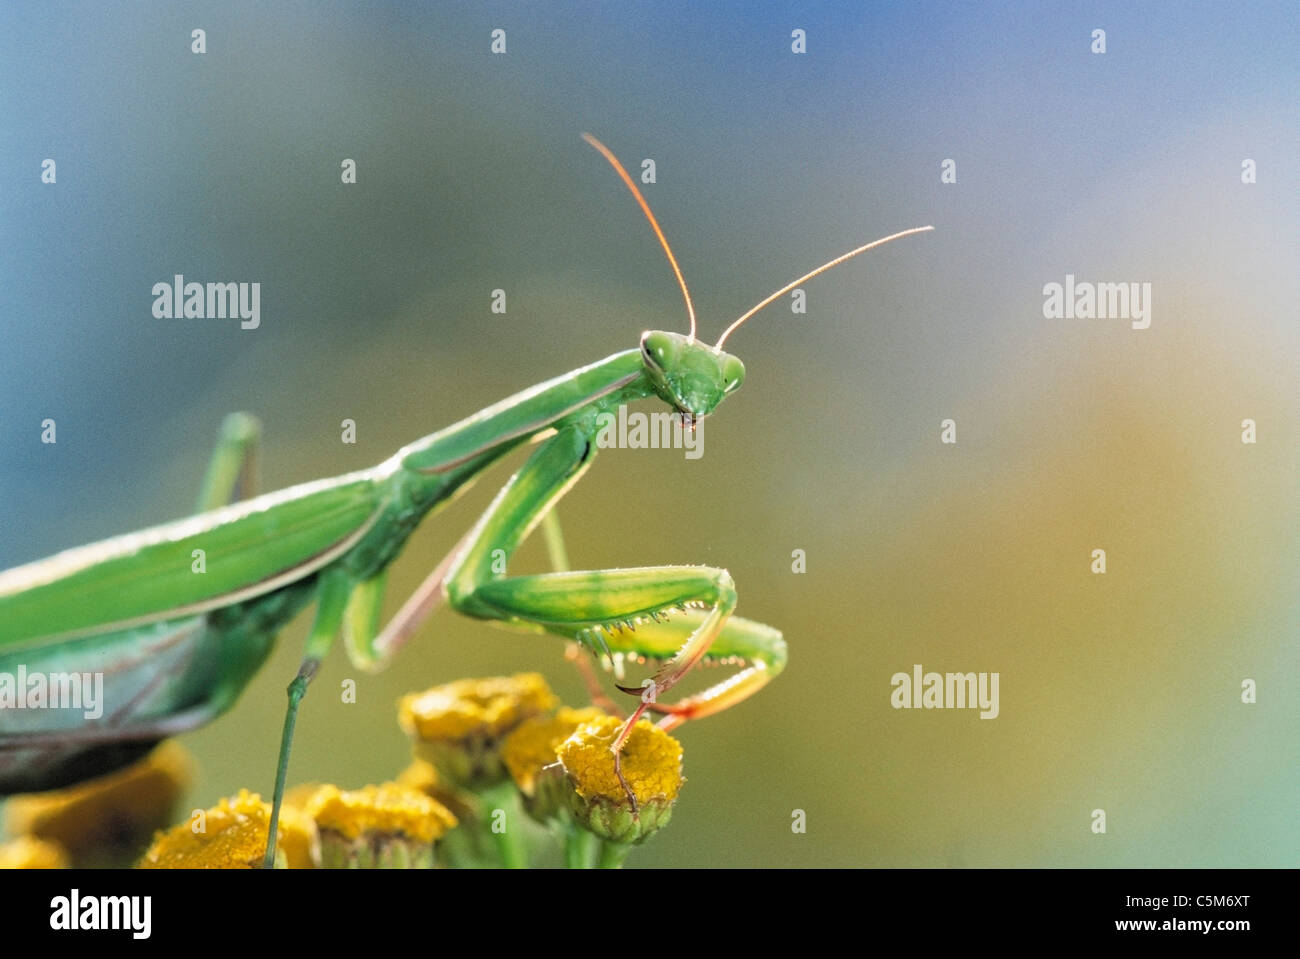 European preying mantis / Mantis religiosa Stock Photo